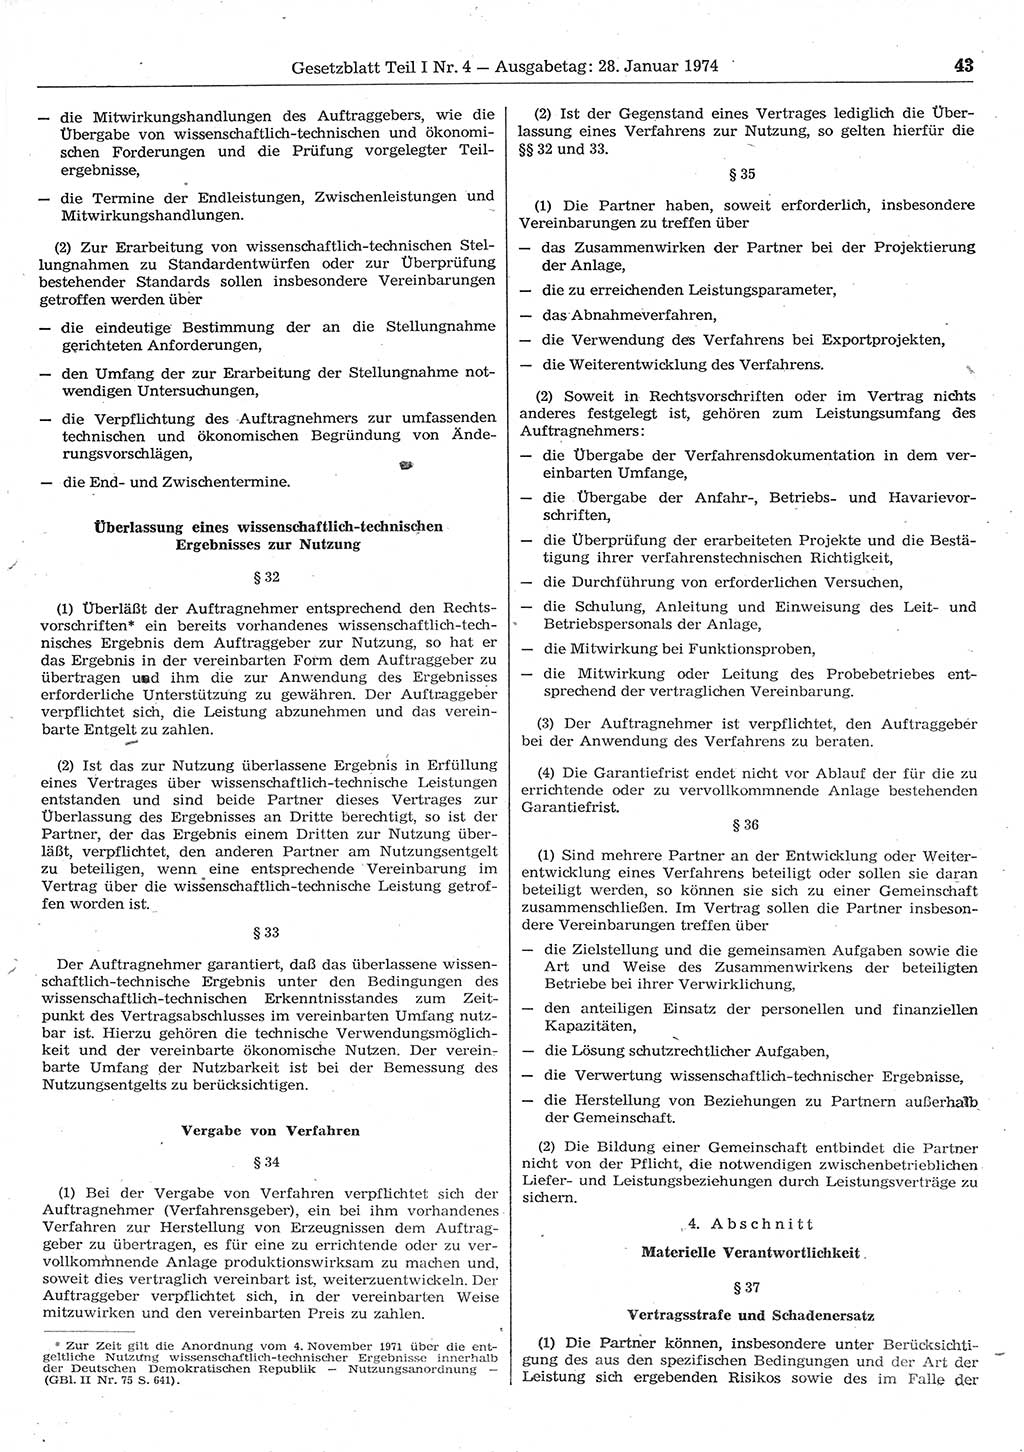 Gesetzblatt (GBl.) der Deutschen Demokratischen Republik (DDR) Teil Ⅰ 1974, Seite 43 (GBl. DDR Ⅰ 1974, S. 43)